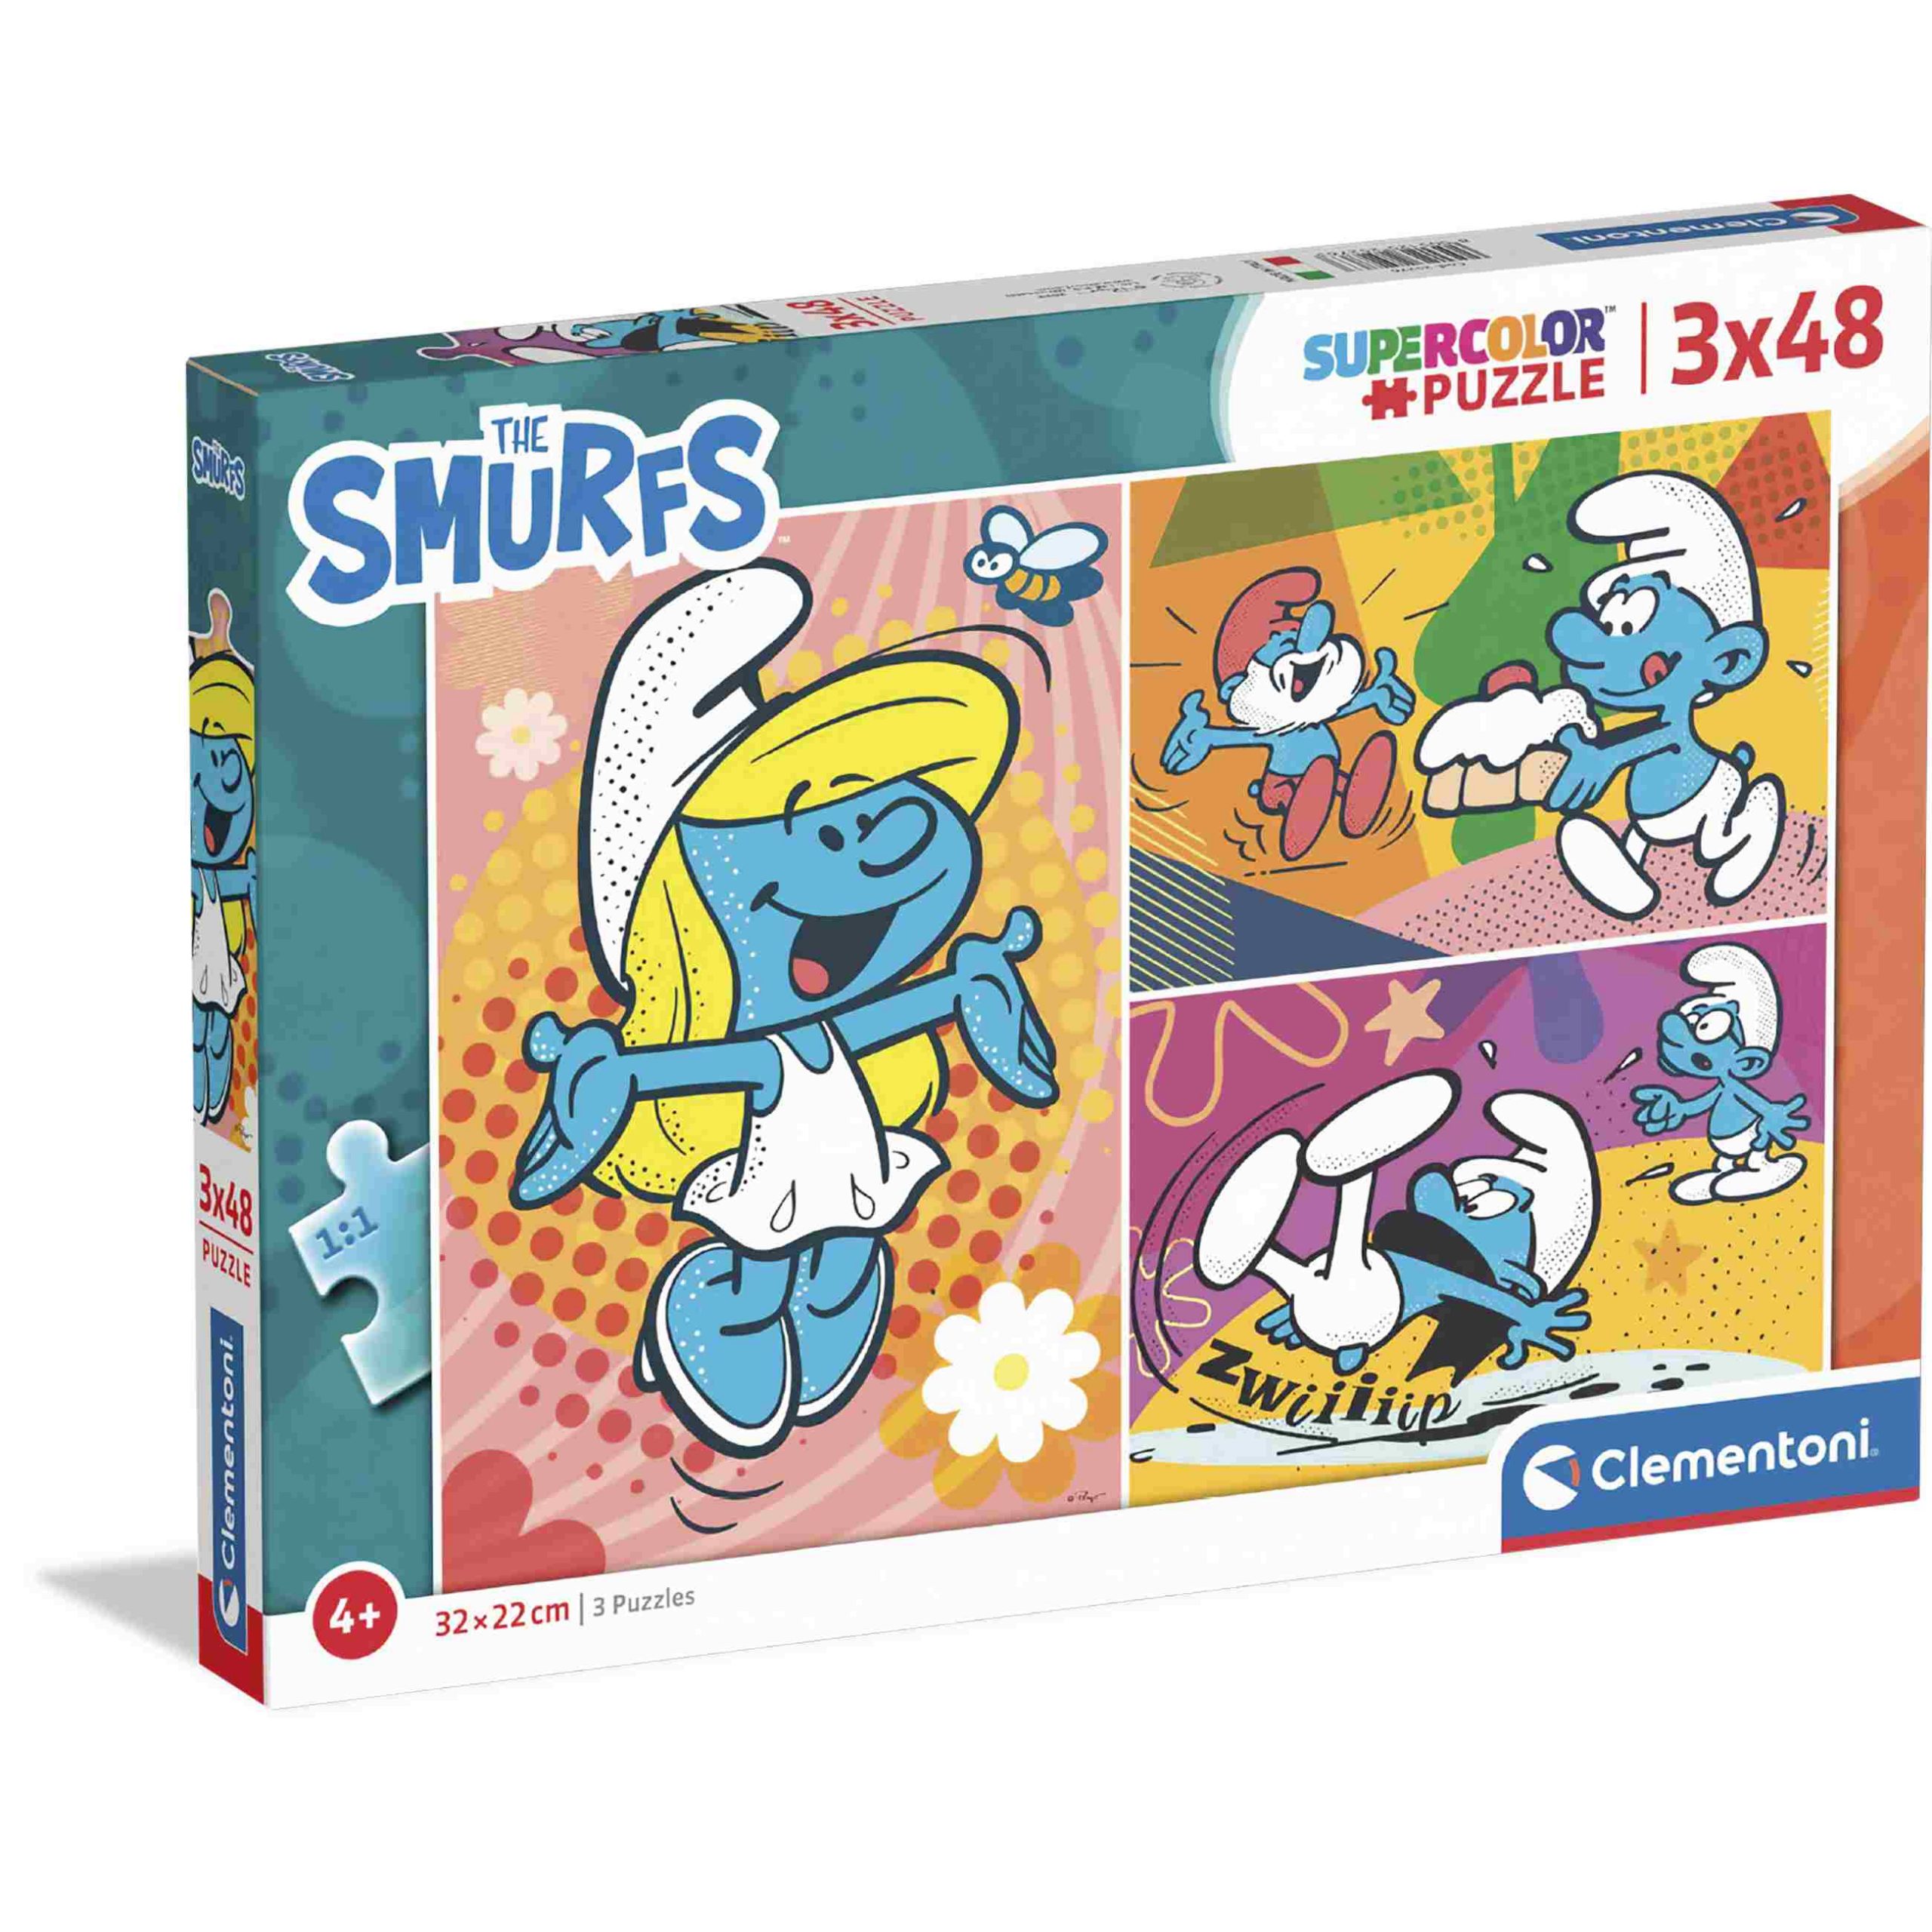 Clementoni supercolor puzzle the smurfs - 3x48 pezzi - CLEMENTONI